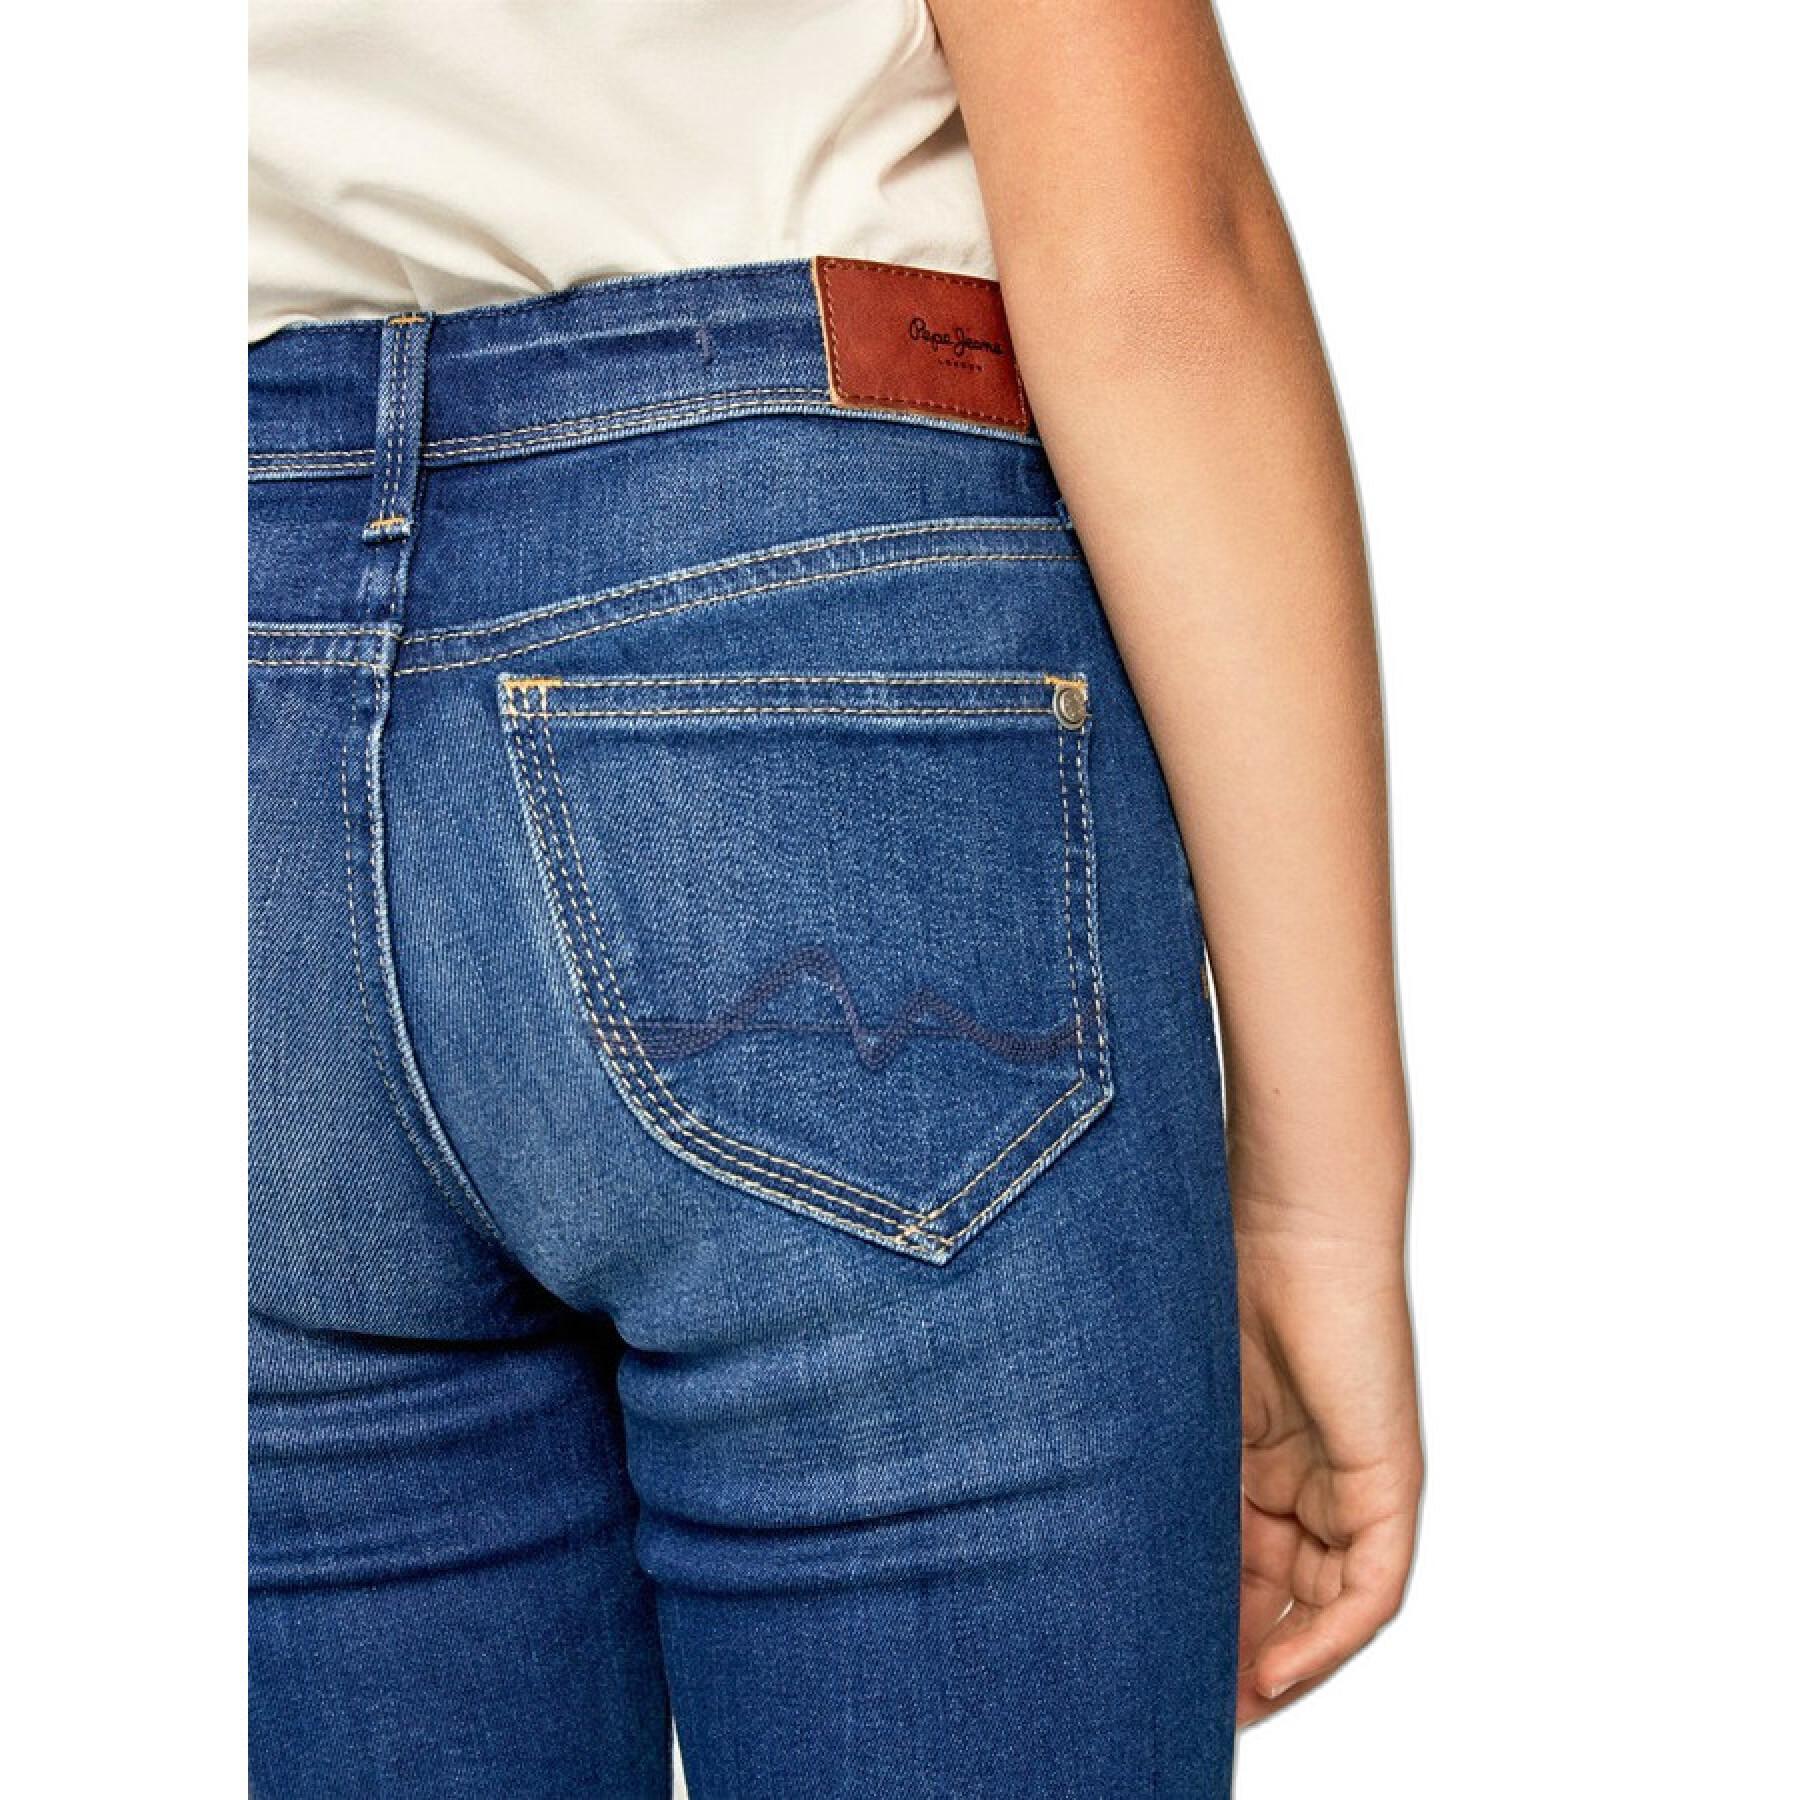 Jeans mit hohem Bein für Mädchen Pepe Jeans Pixlette